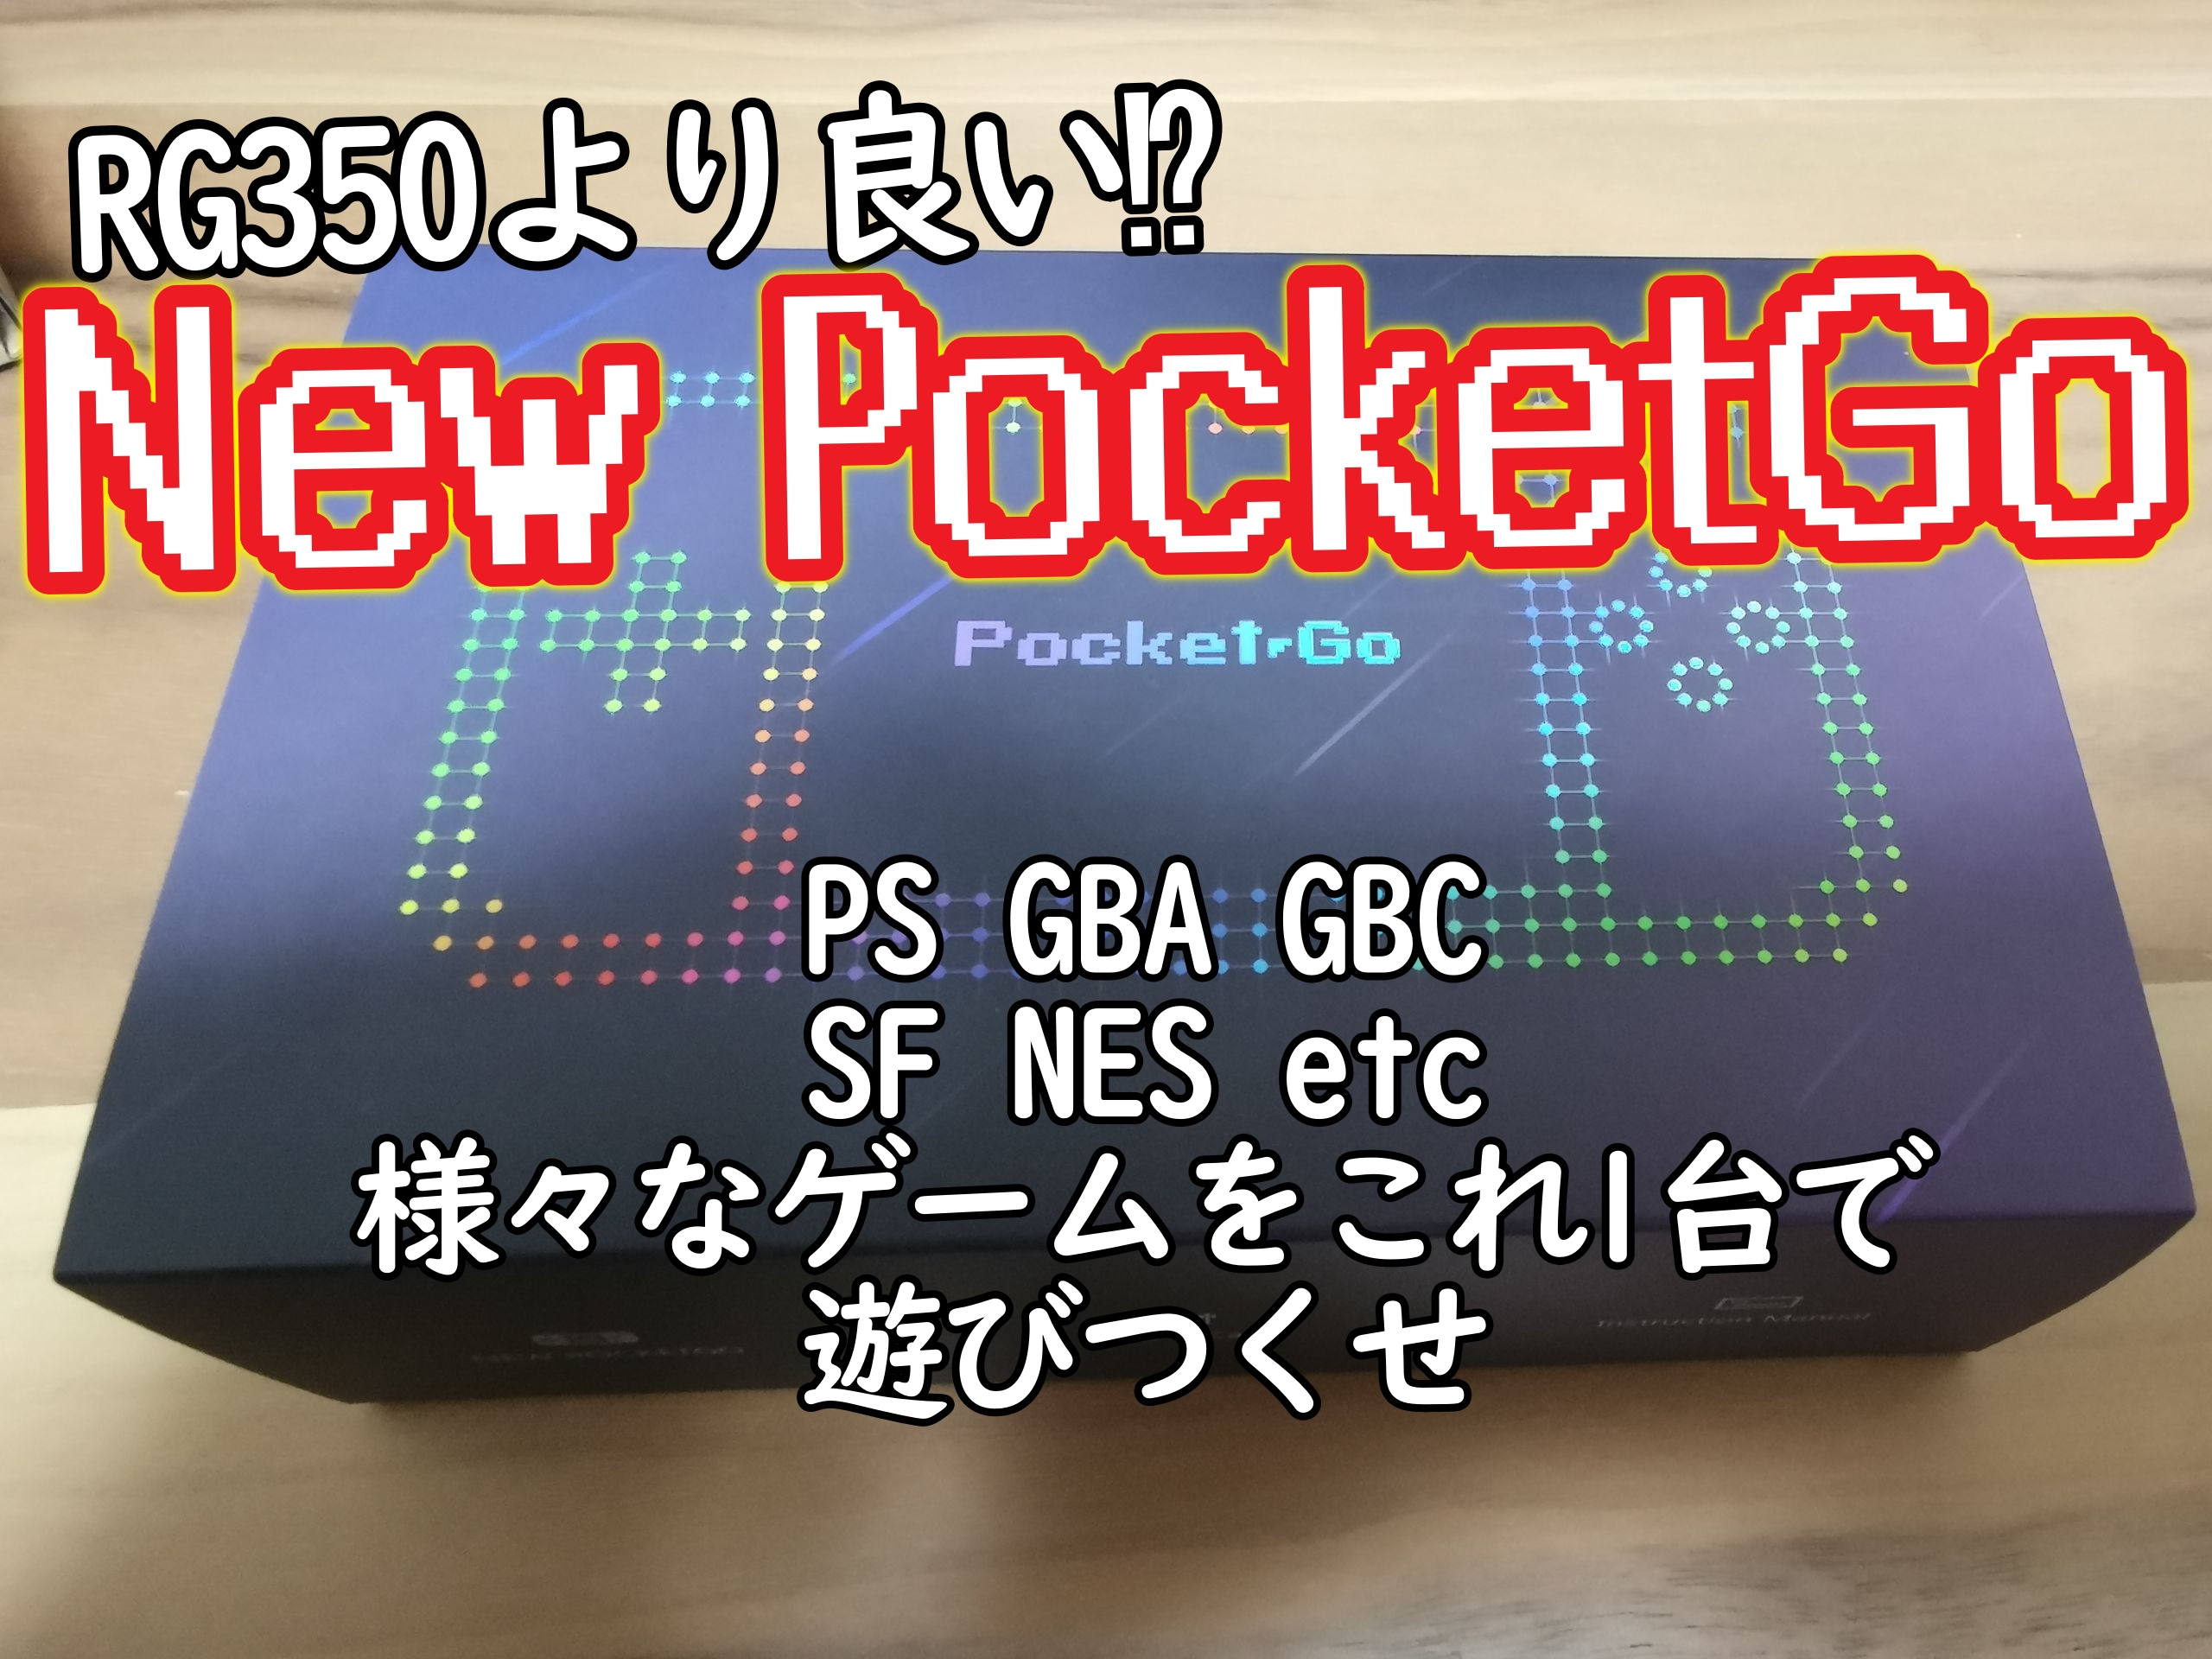 使い方 New Pocketgoレビュー エミュでゲームを遊ぶならこれ Psp Go Gbミクロ好きにもおすすめ